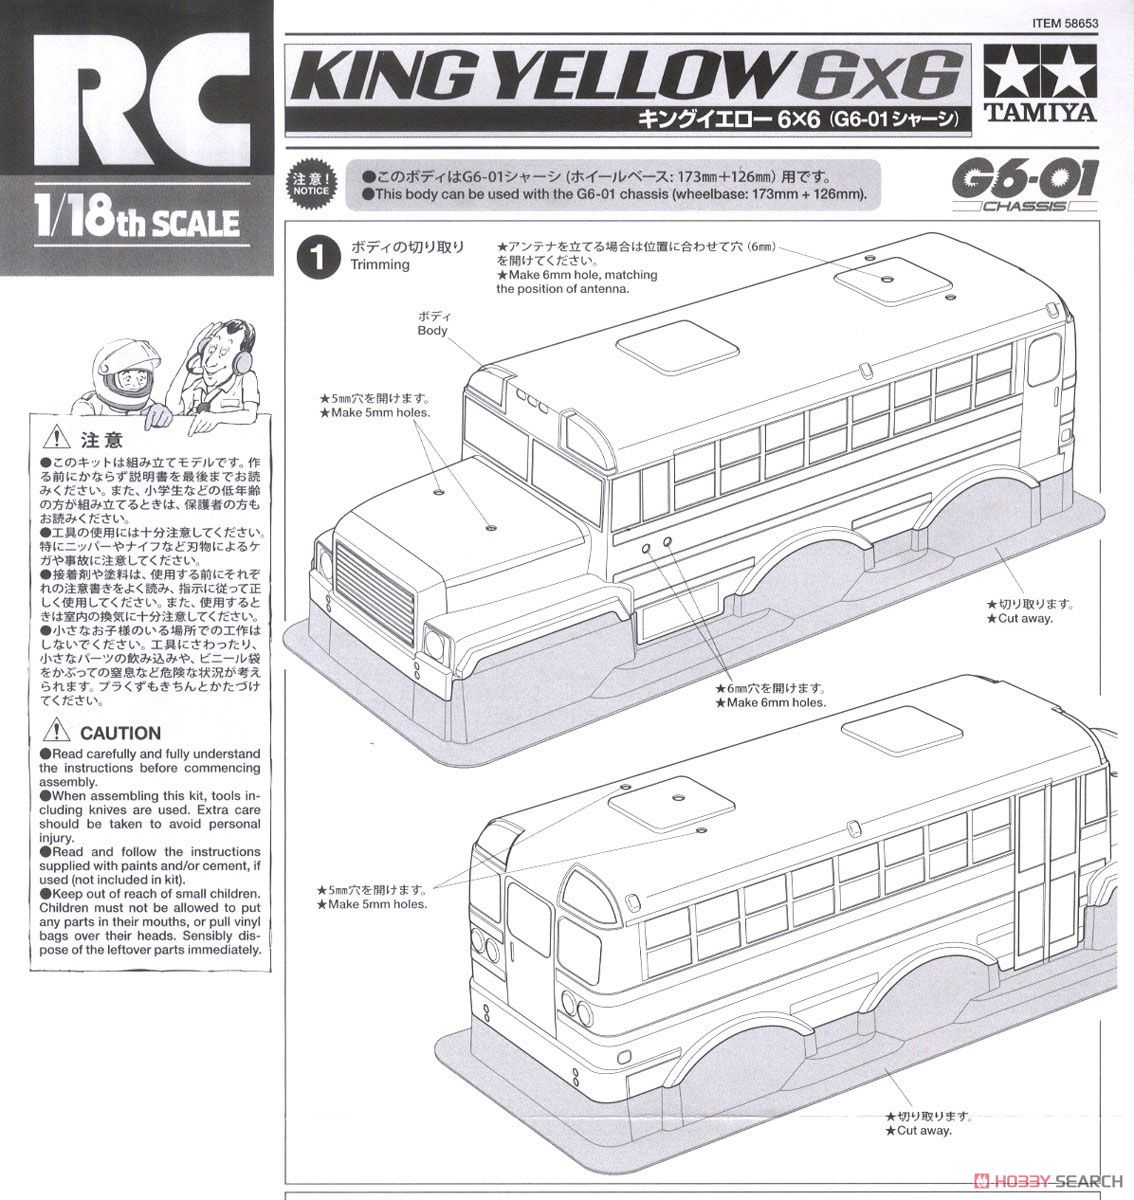 キングイエロー 6×6 (G6-01シャーシ) (ラジコン) 設計図15